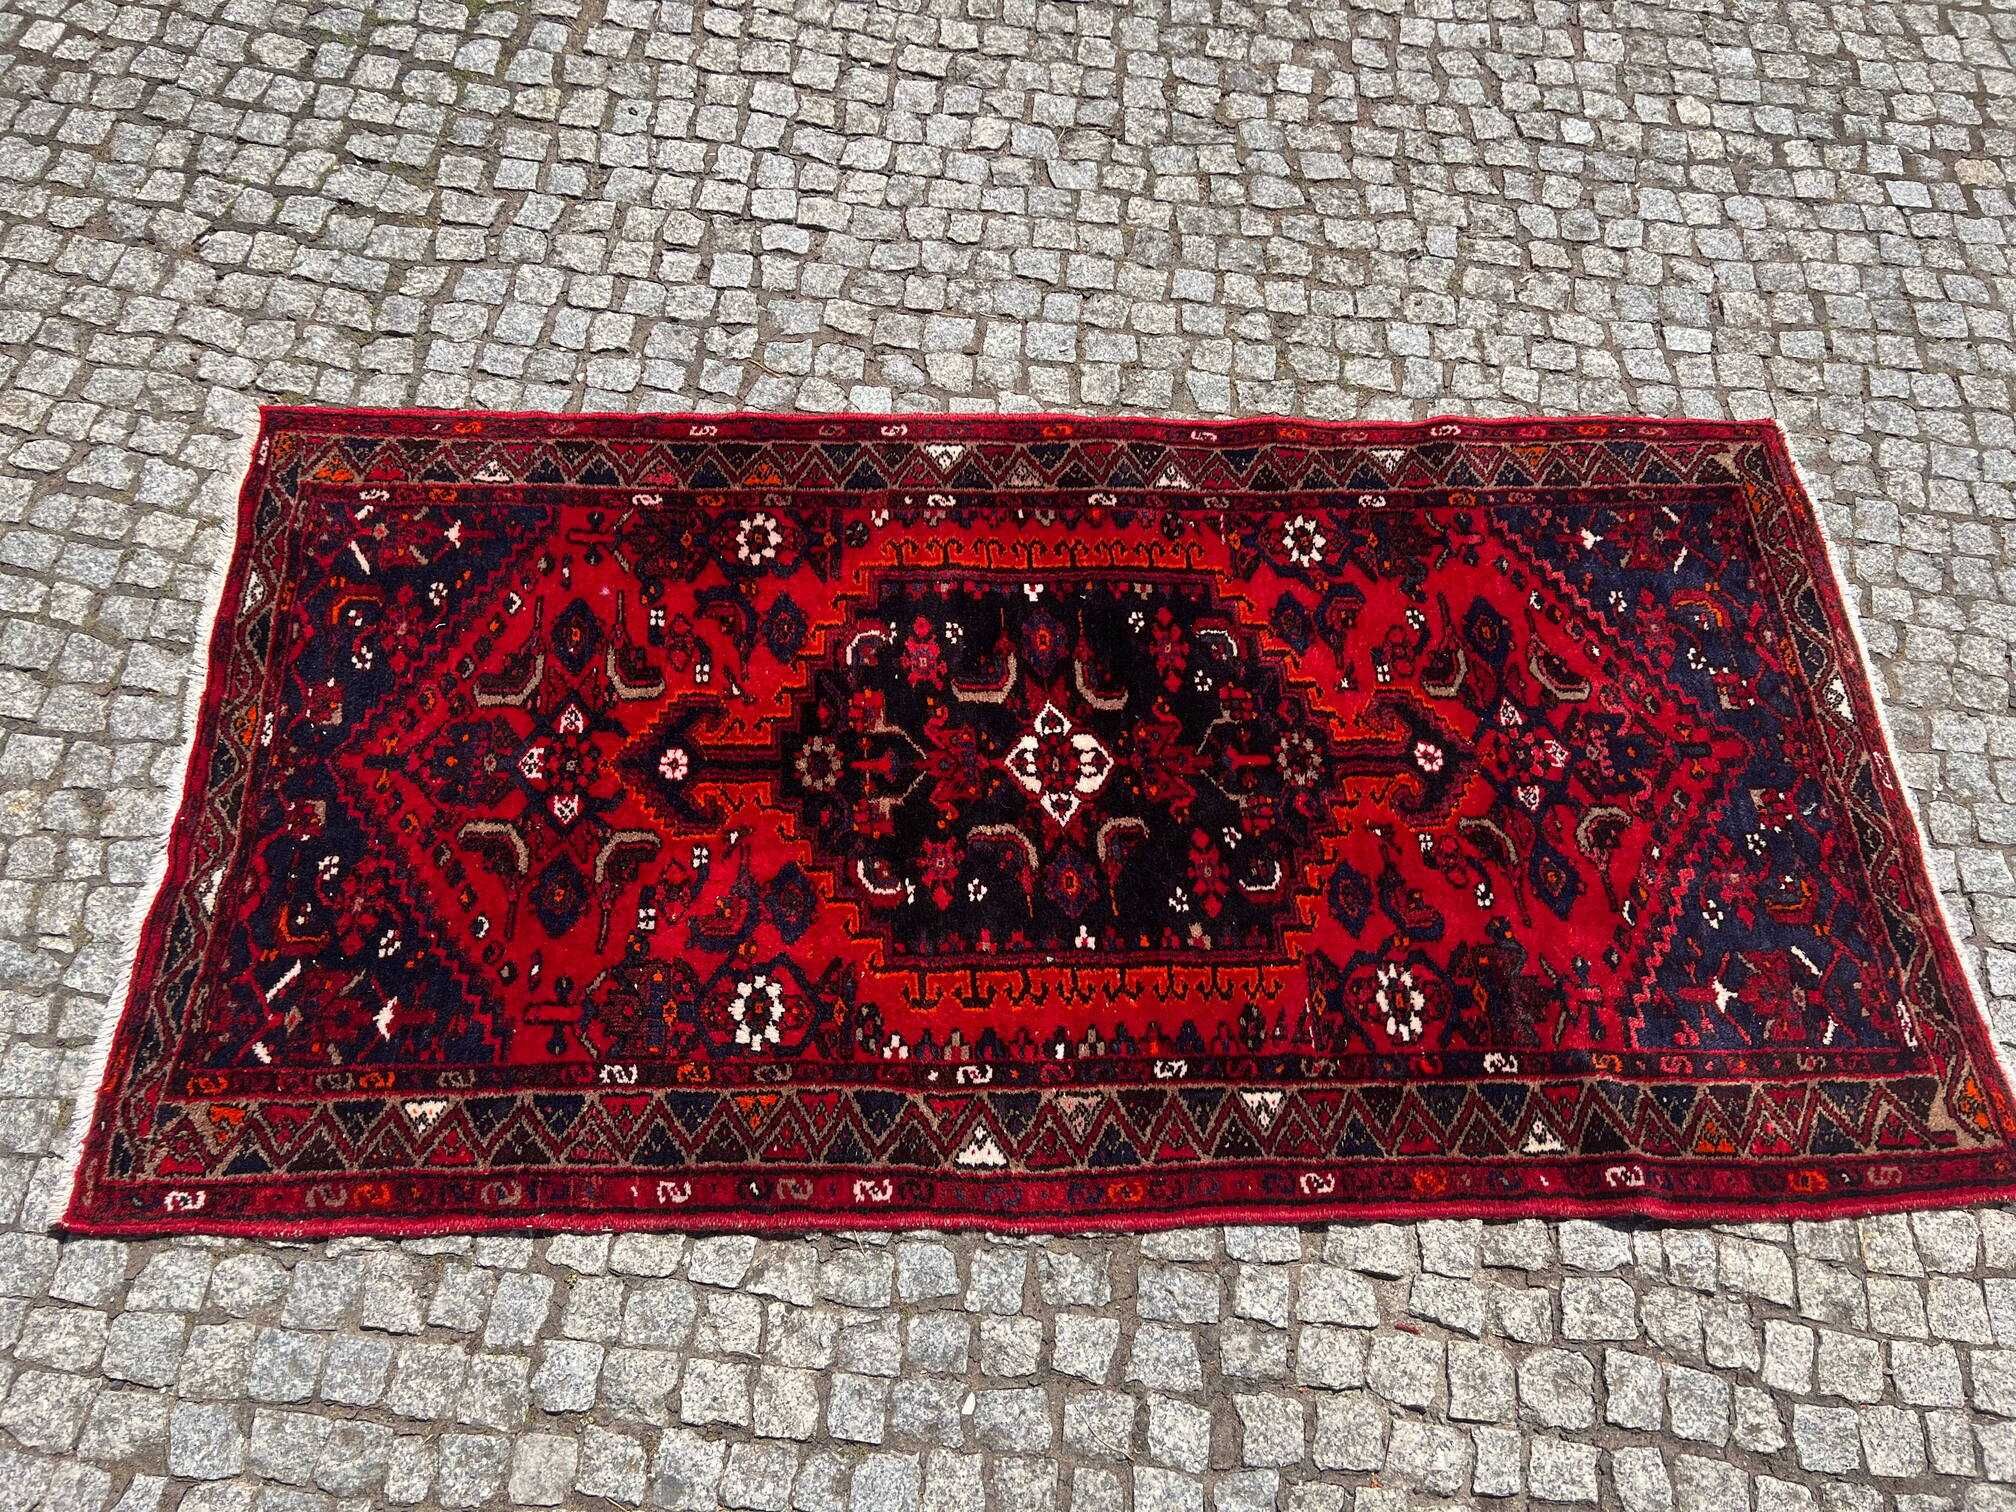 Antyczny dywan perski ręczny Hamadan  200x101 galeria 8 tys